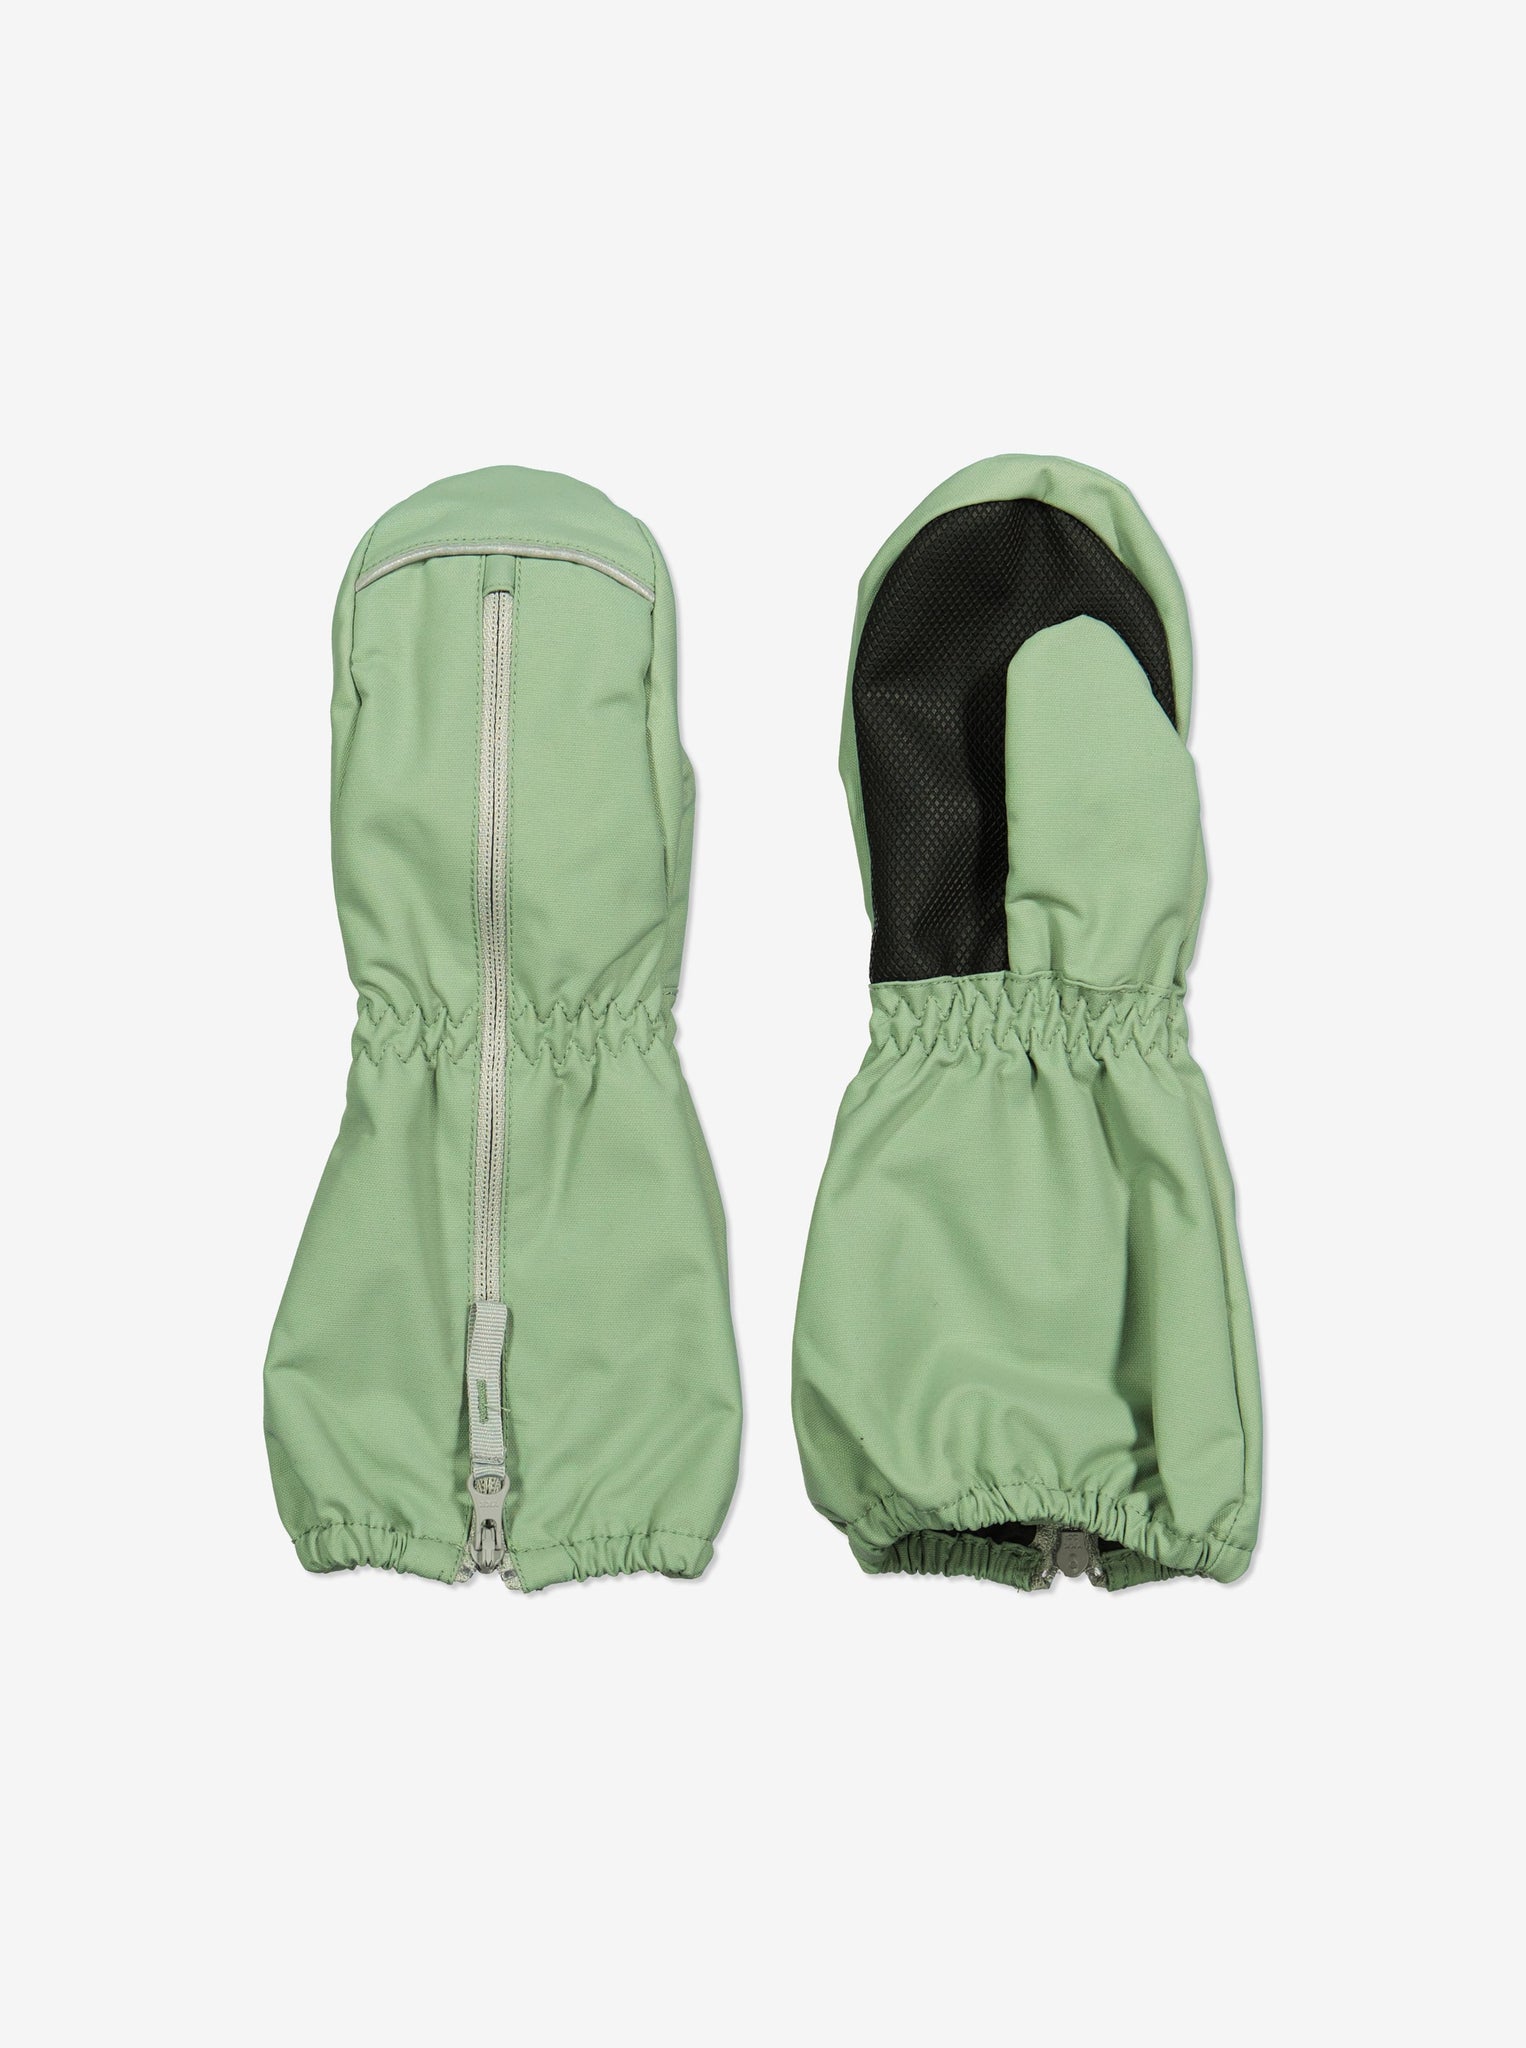 Green Fleece Lined Kids Waterproof Mittens from Polarn O. Pyret Kidswear. Warm kids Mittens 